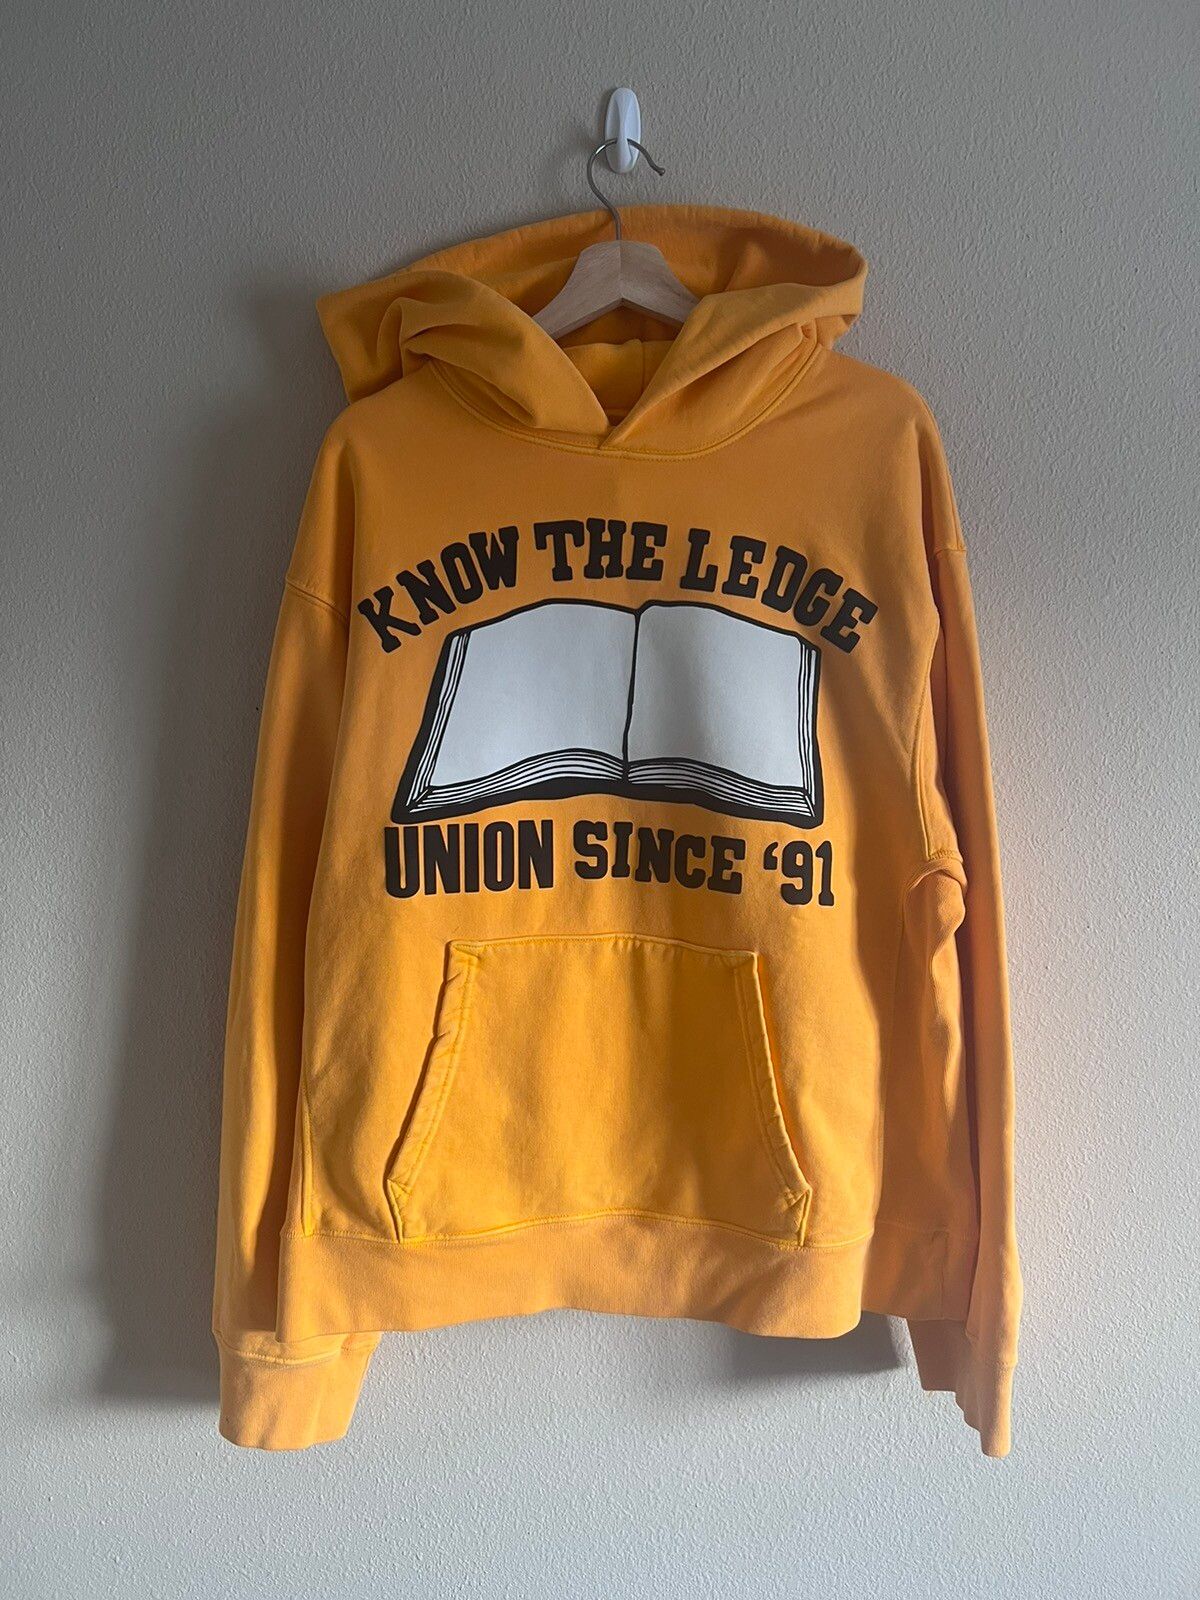 Union Cactus Plant Flea Market Union Know the Ledge Sweatshirt | Grailed